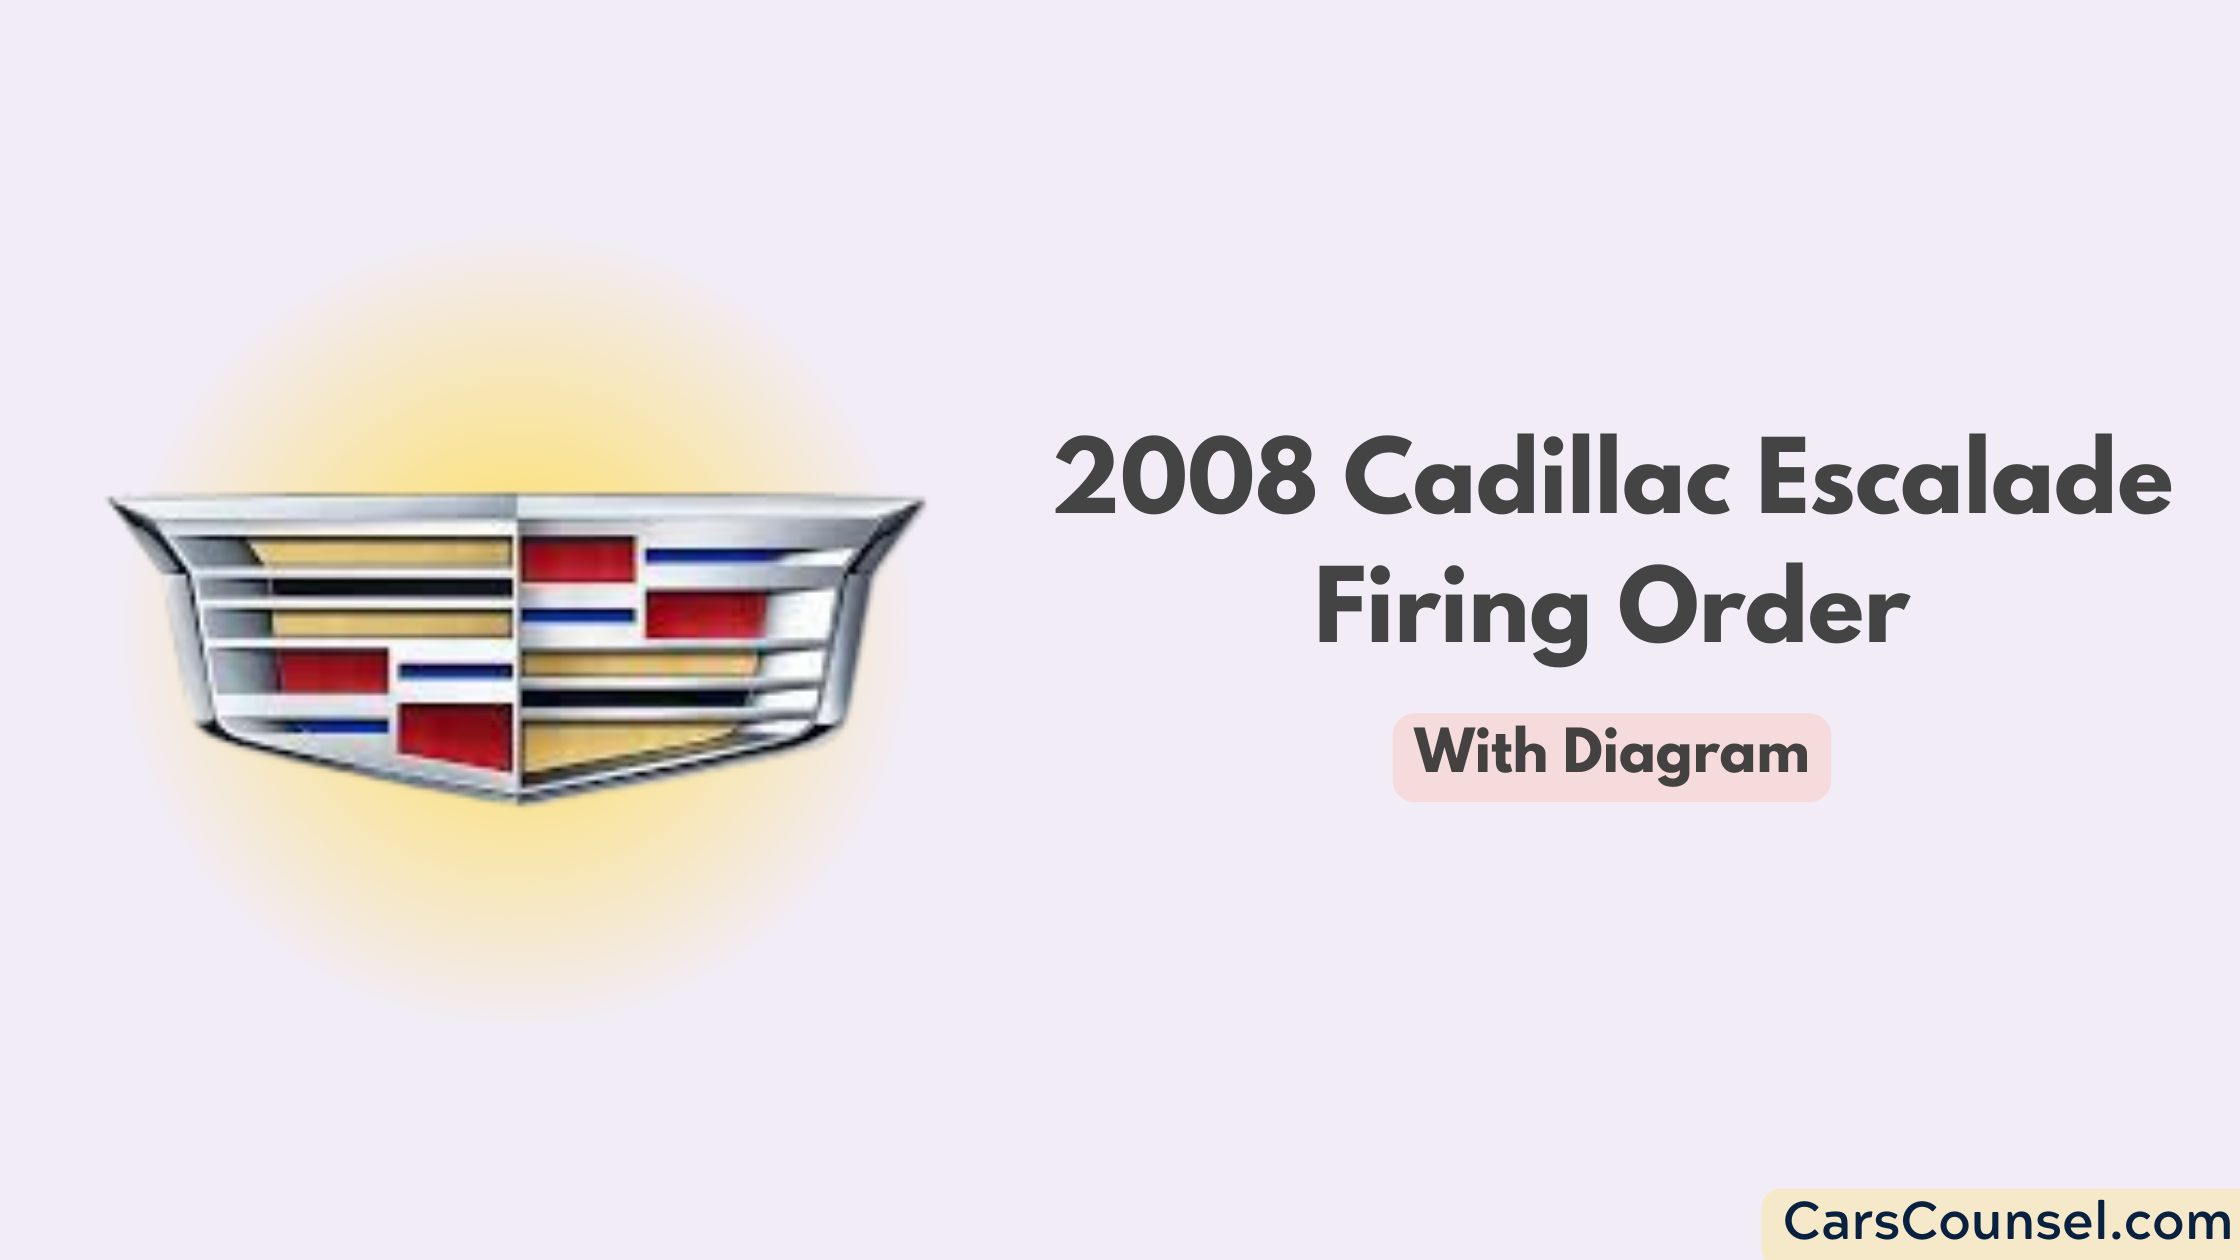 2008 Cadillac Escalade Firing Order With Diagram